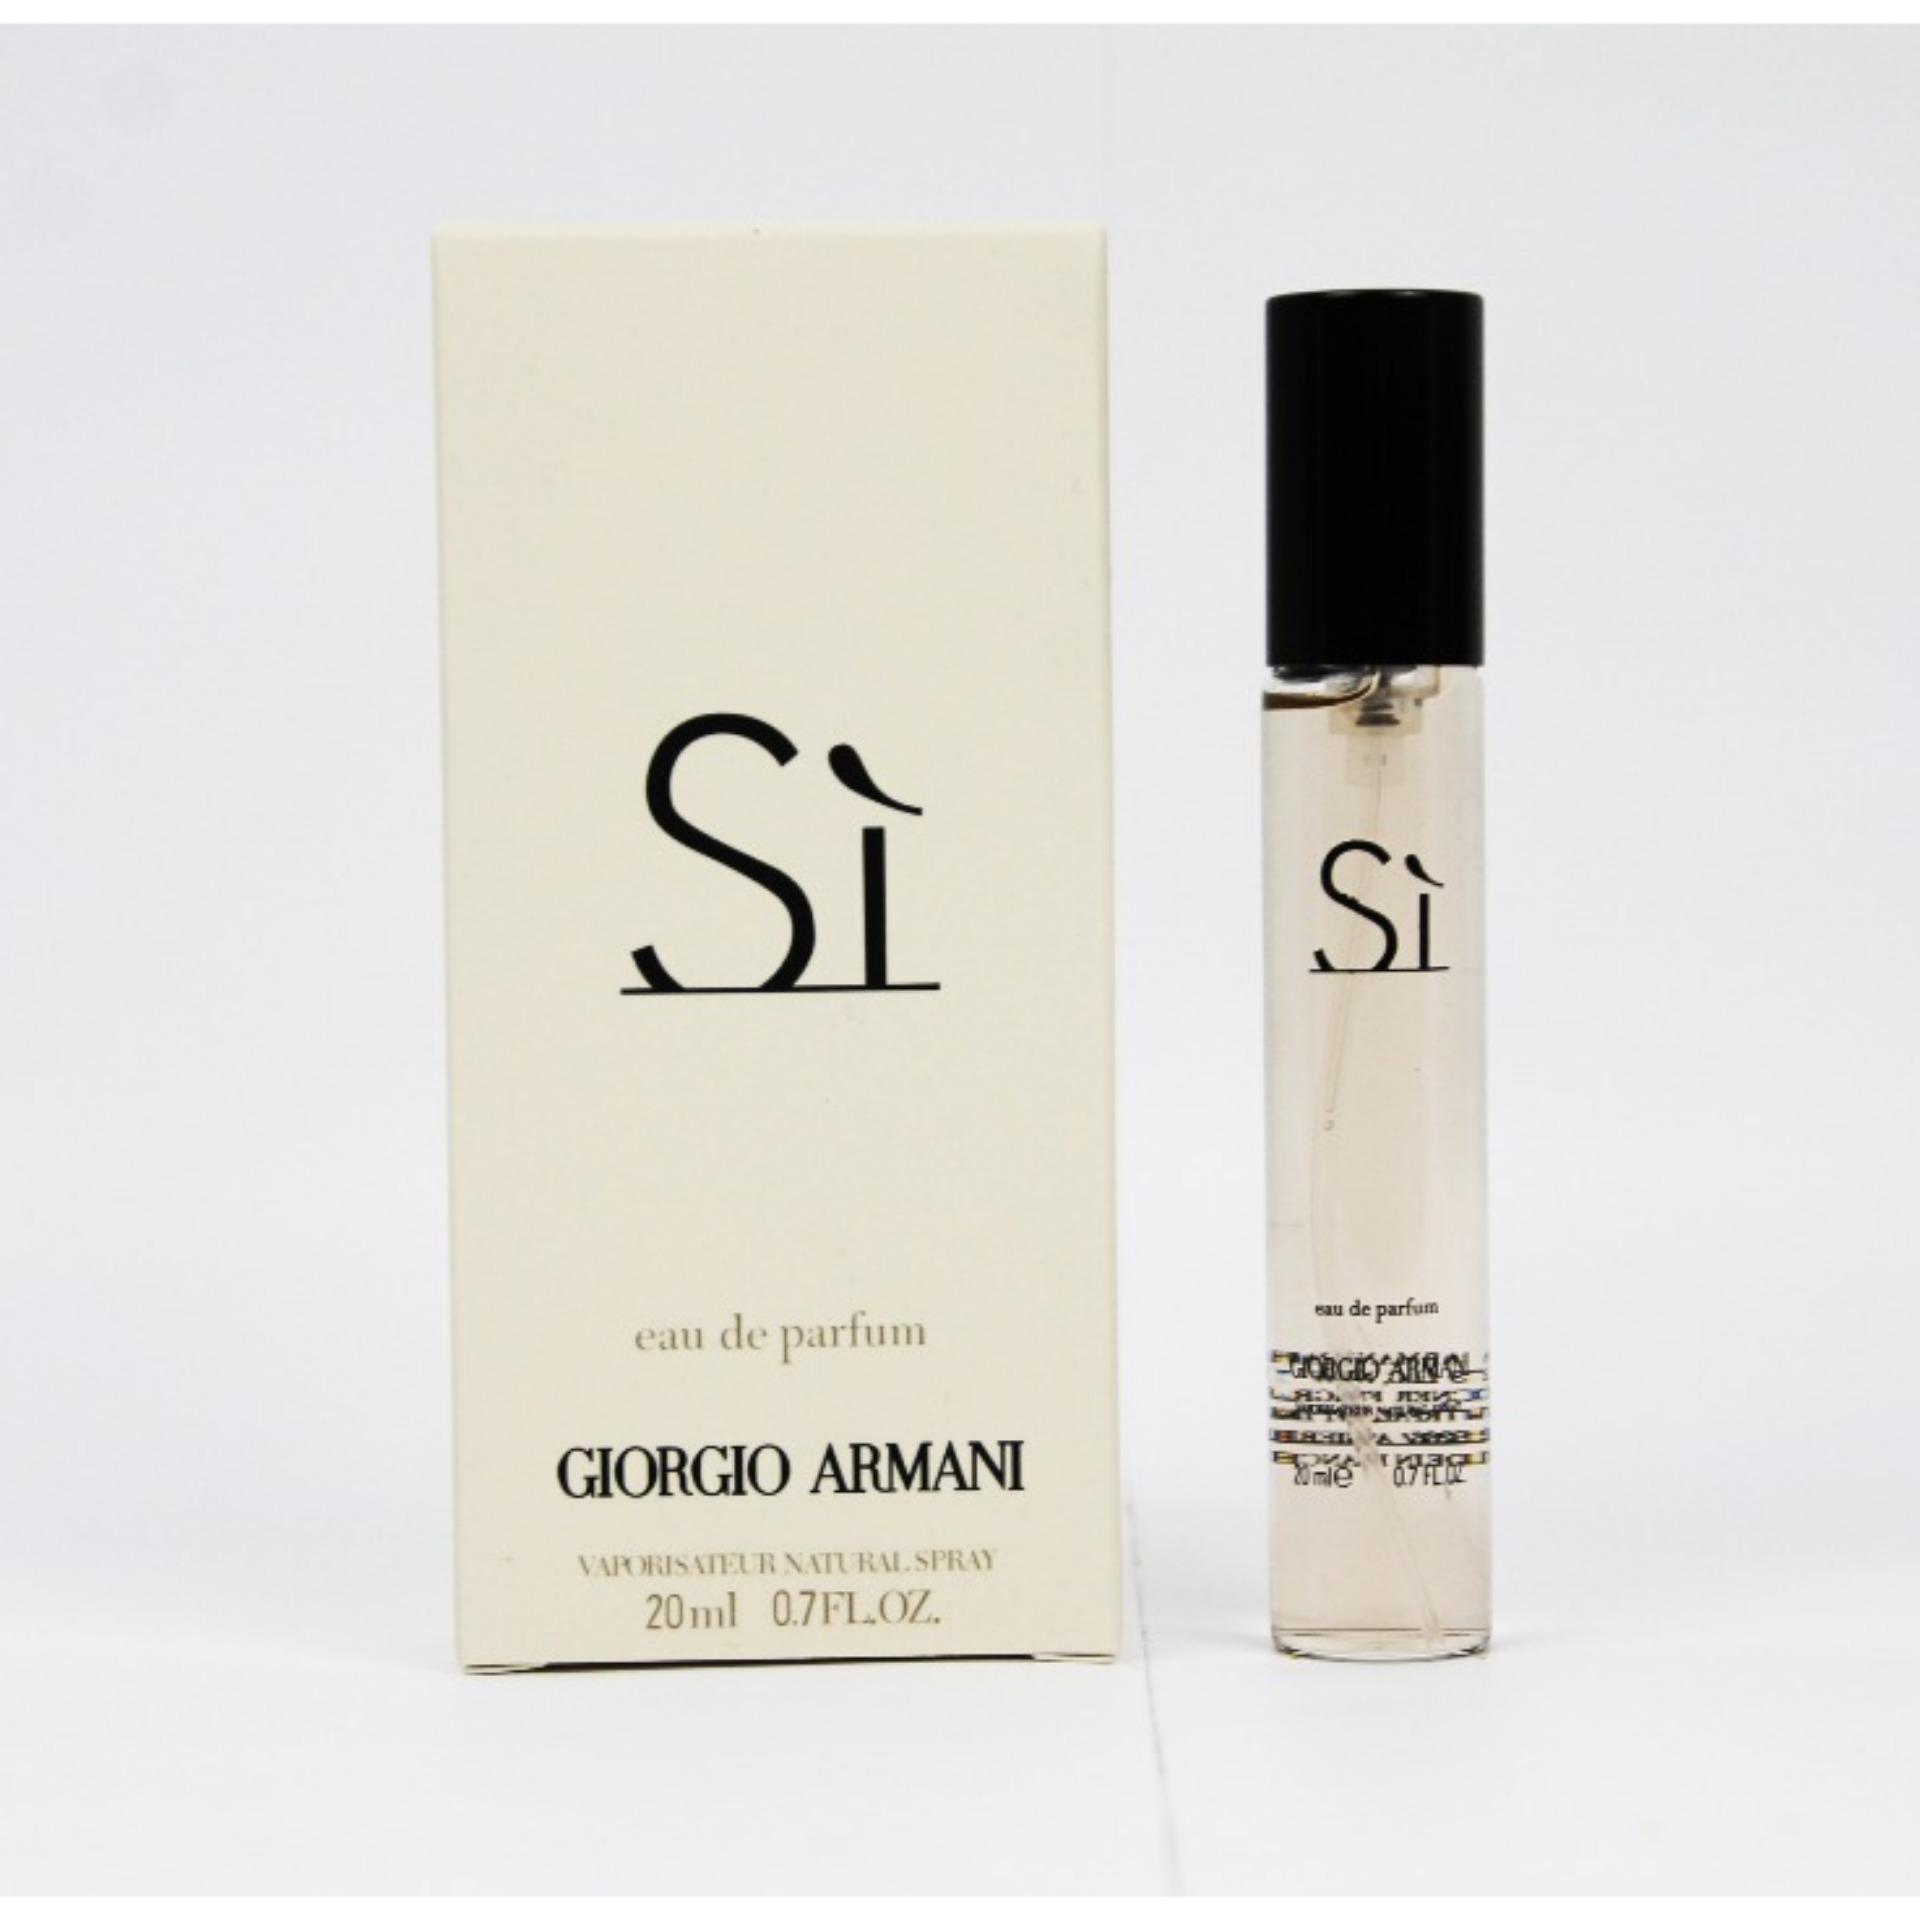 eau de parfum giorgio armani